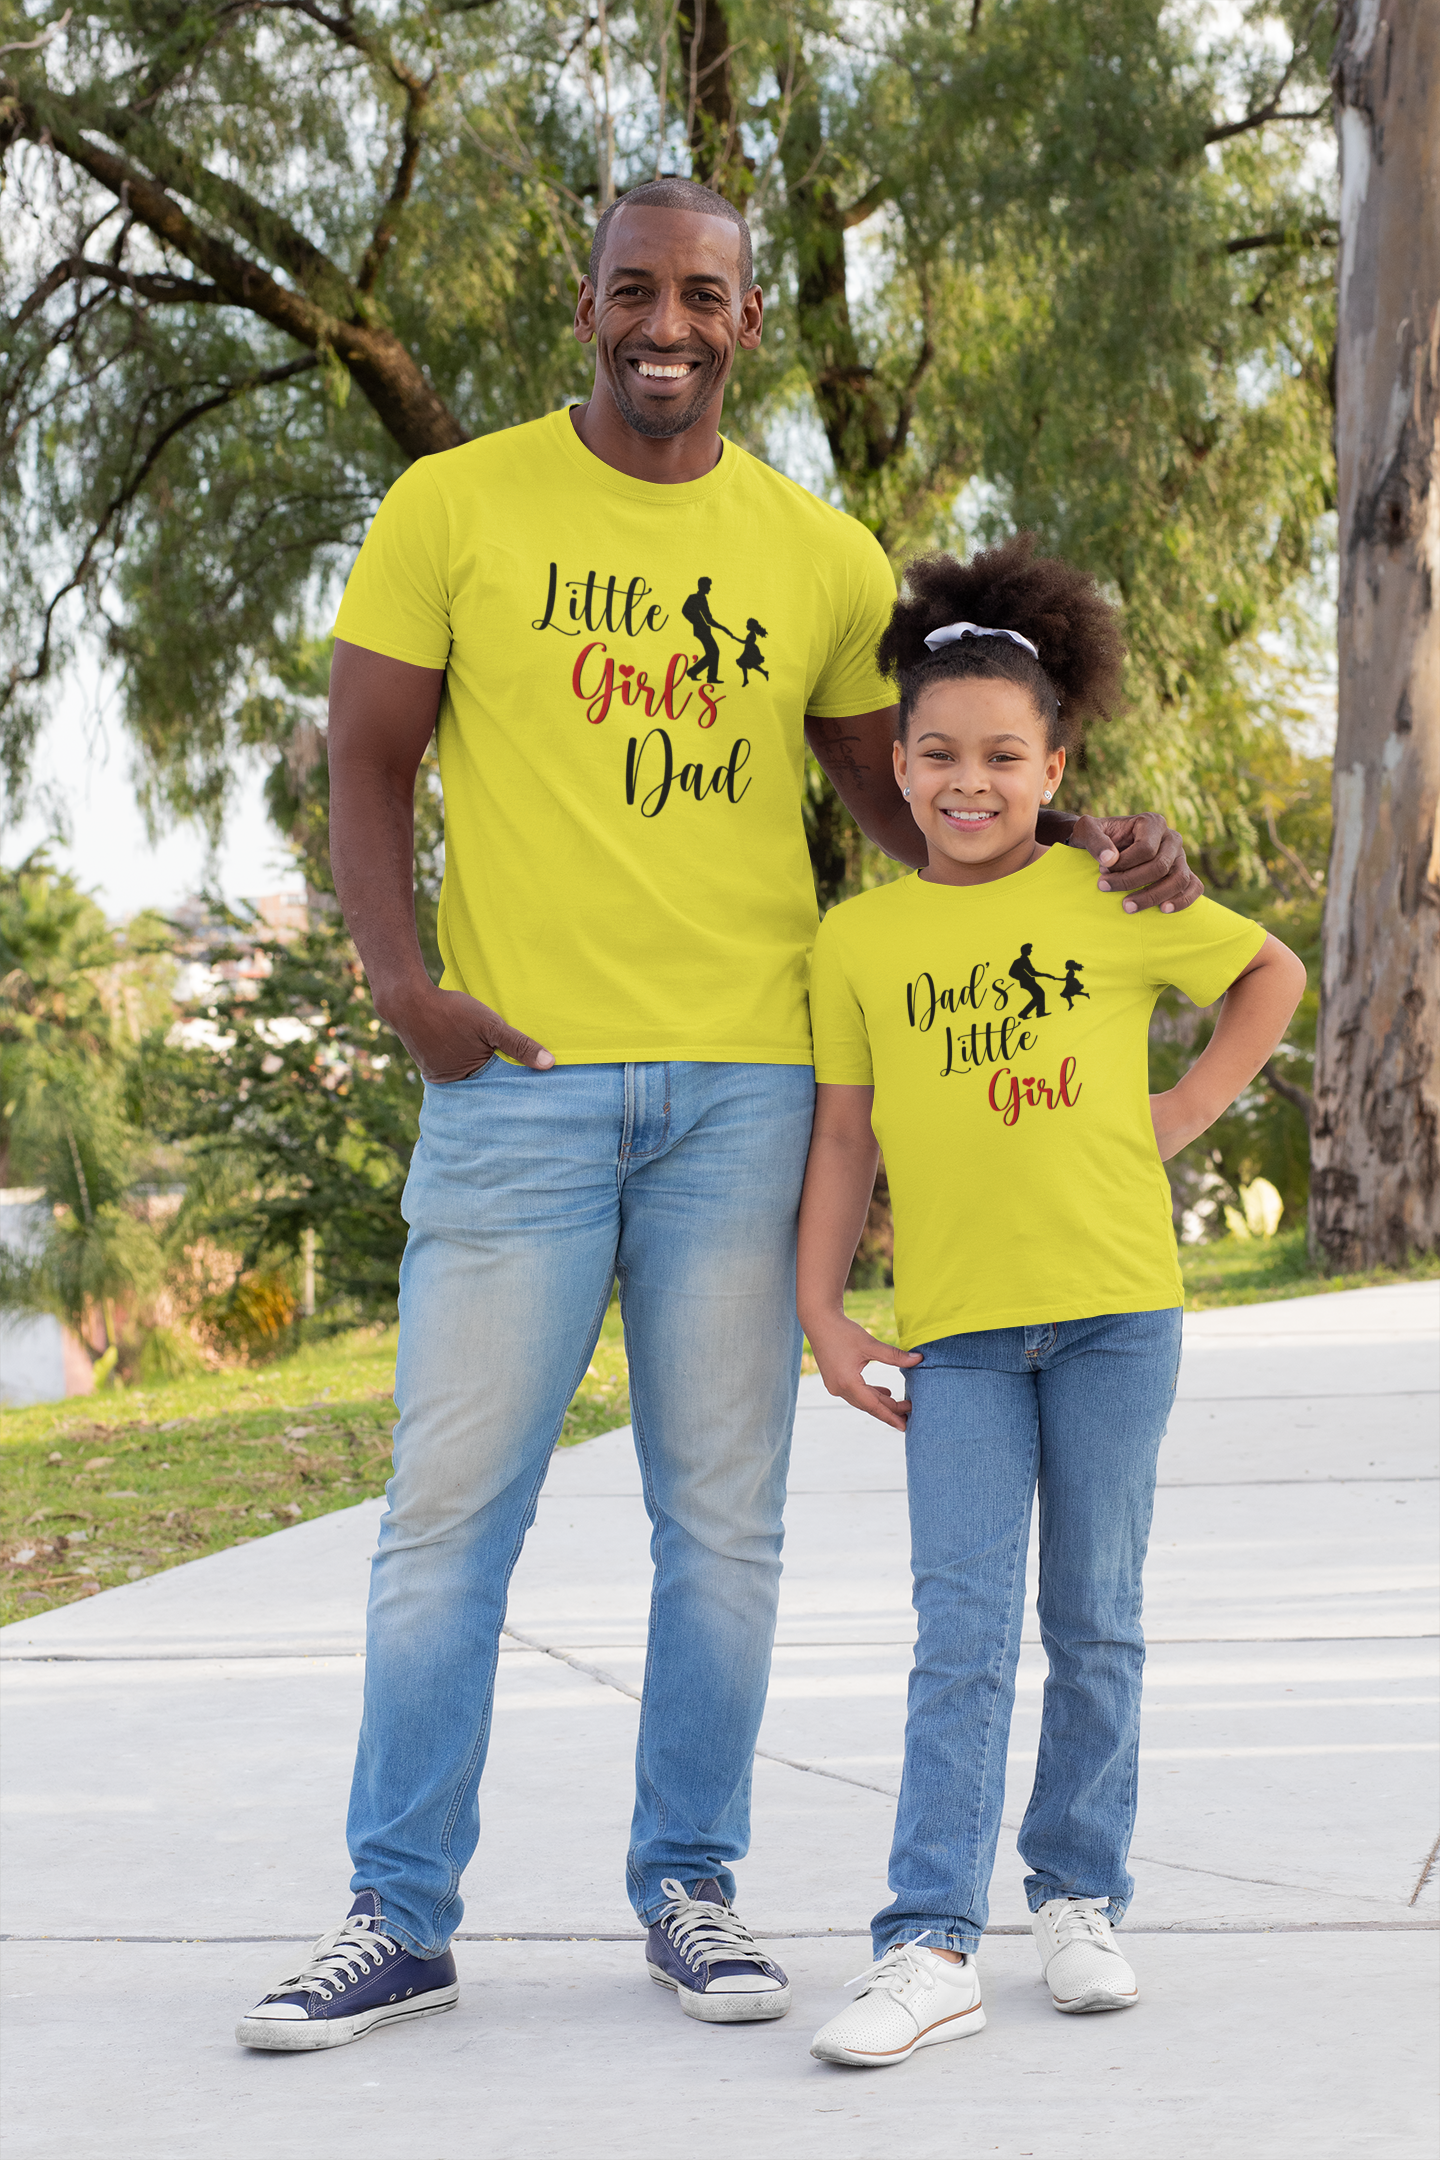 Funny Disney Vacation Family T-Shirt Ideas For Picture | Matching Shirt  Ideas For Family - Matching Family Pajamas By Jenny